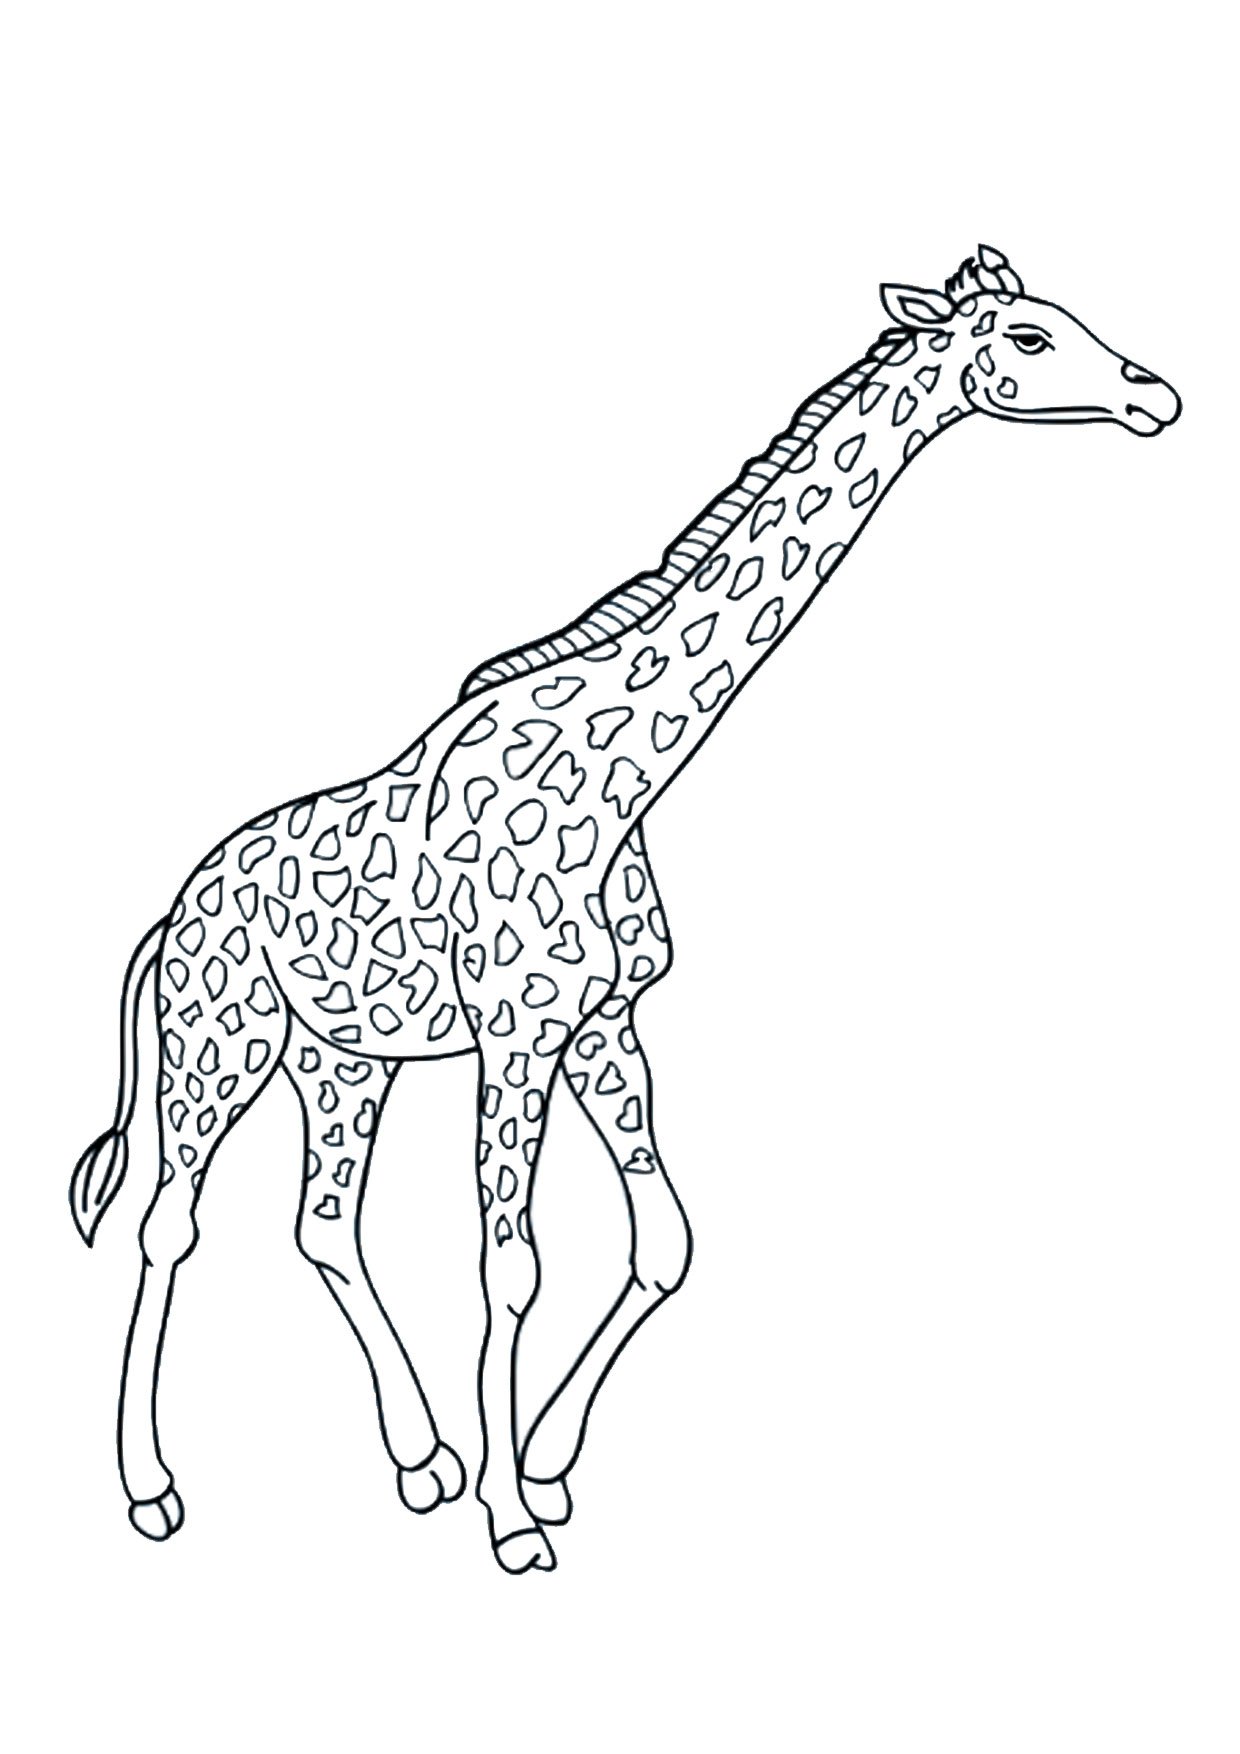 Жирафы раскраска для детей